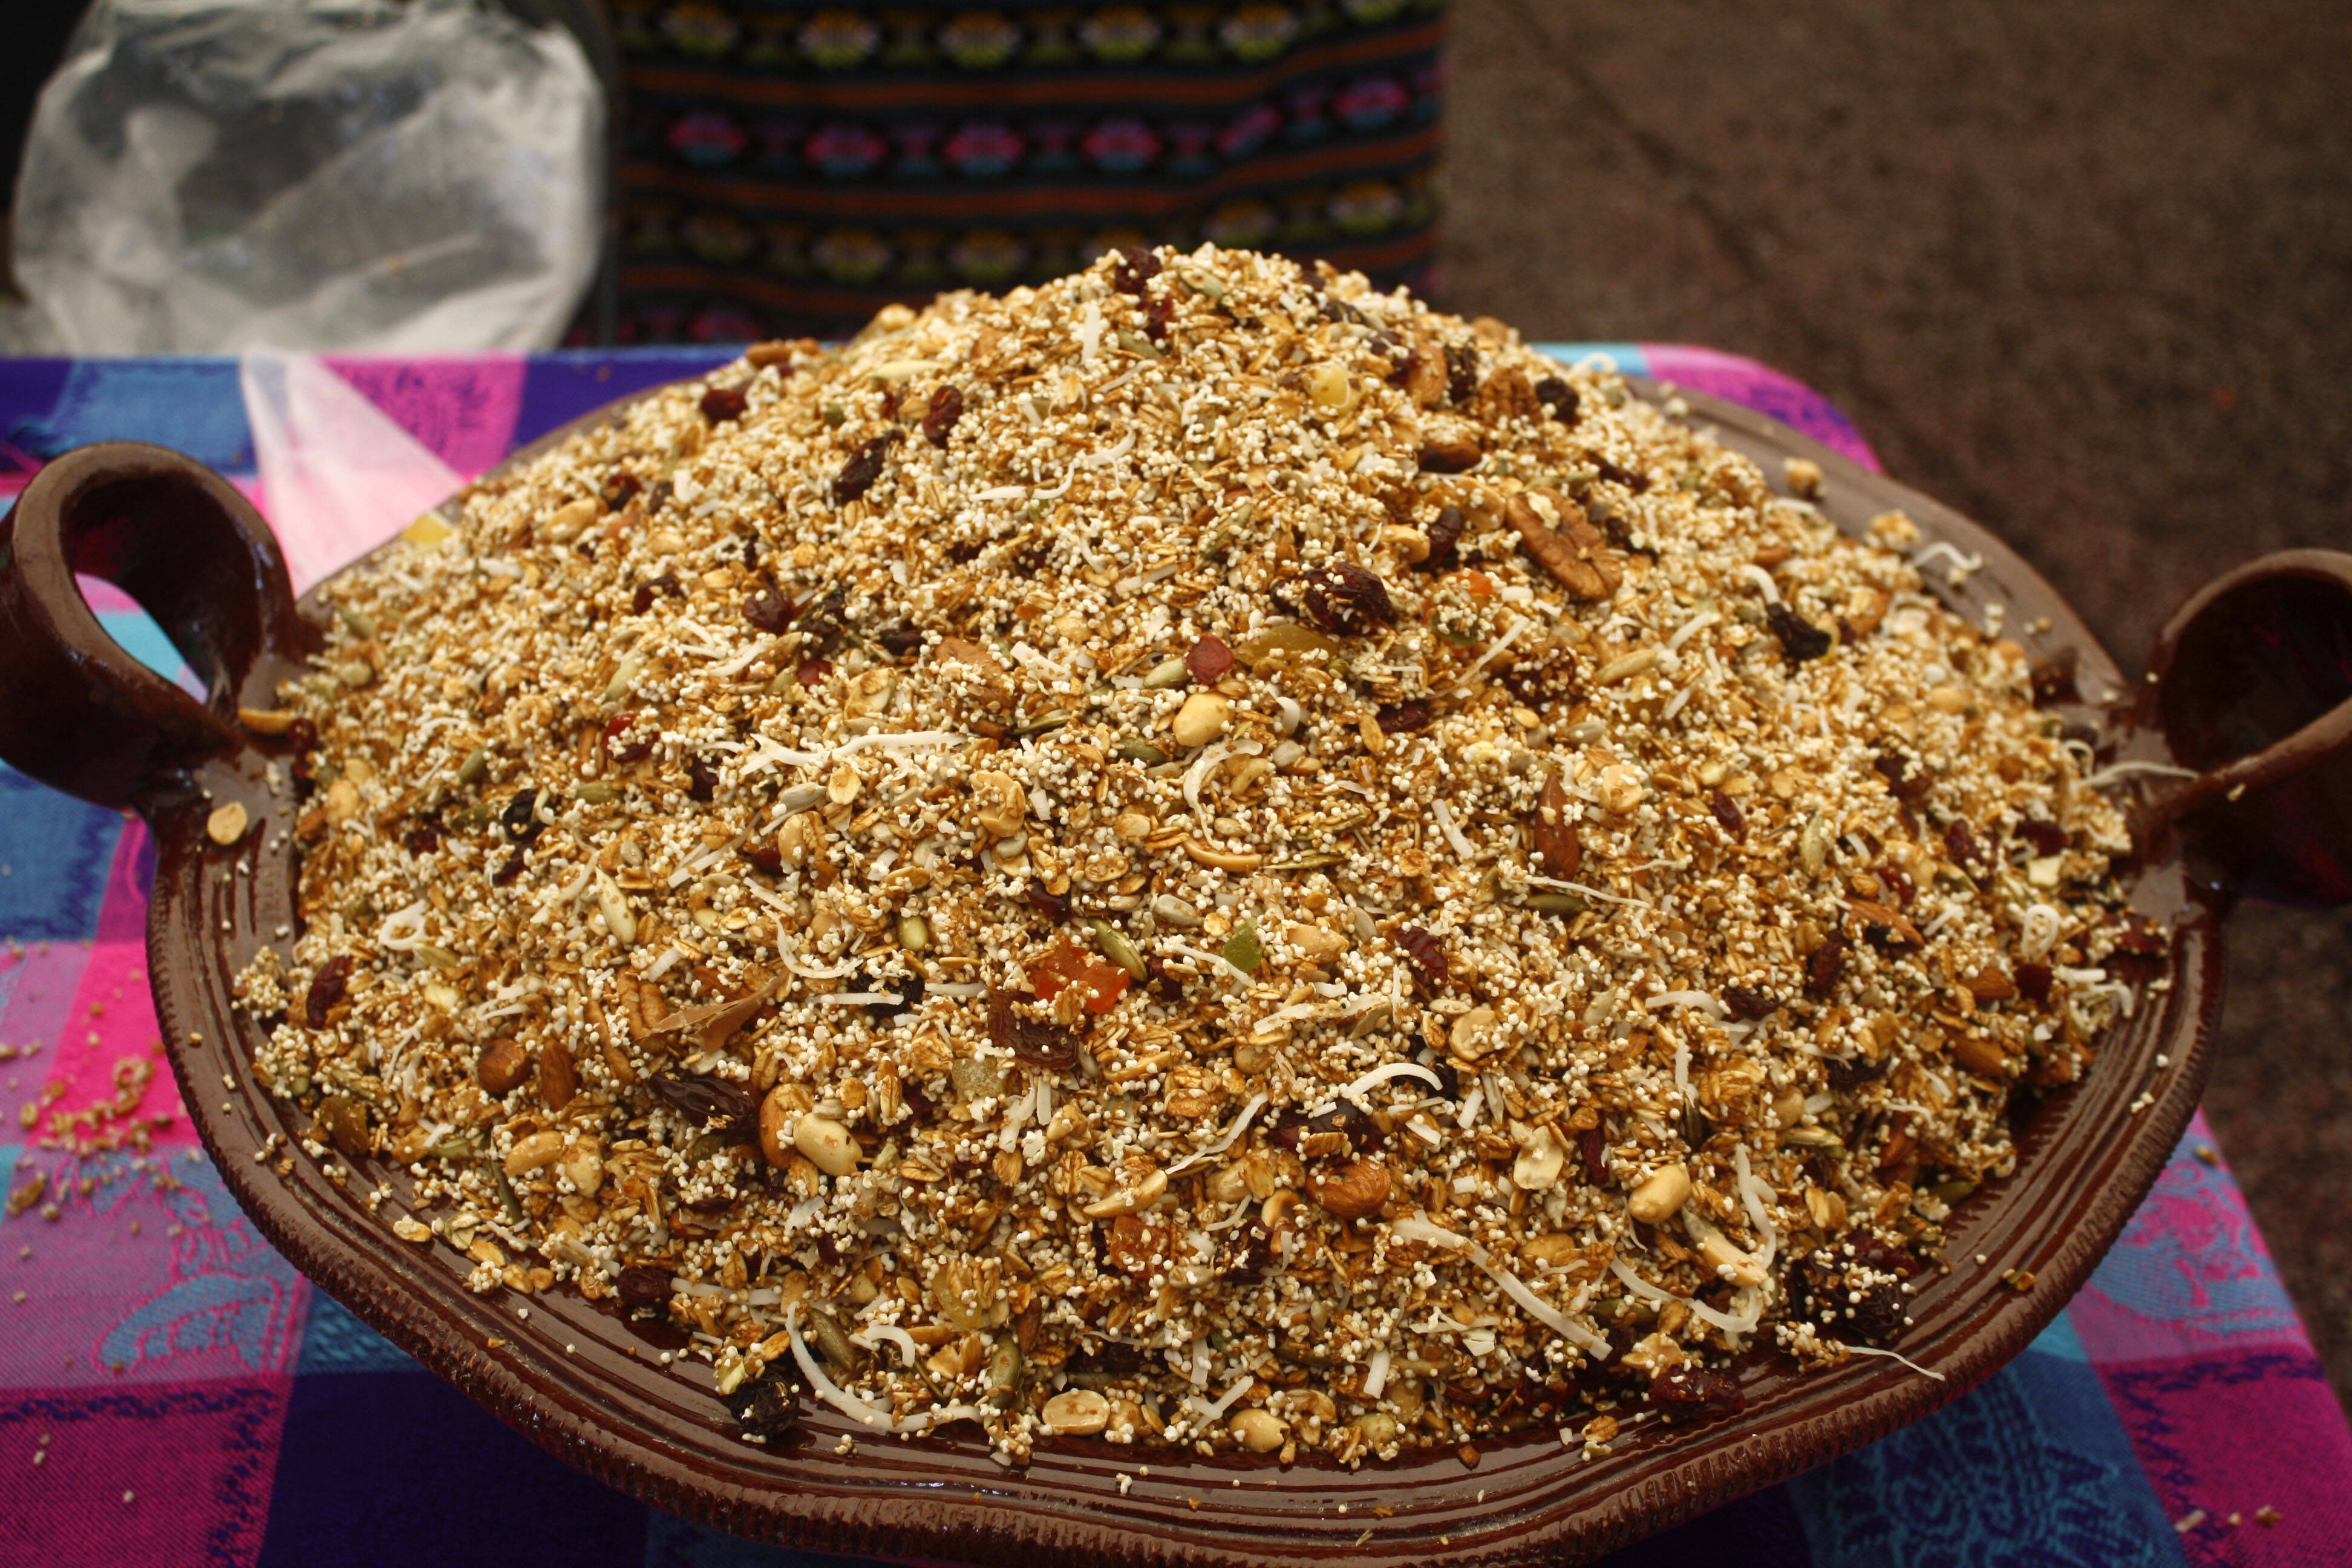 A iguaria é um tipo de granola, feita de frutas secas e grãos. Embalada, ela fica no formato de uma barrinha de cereal. Foto: Nina Ramos/iG